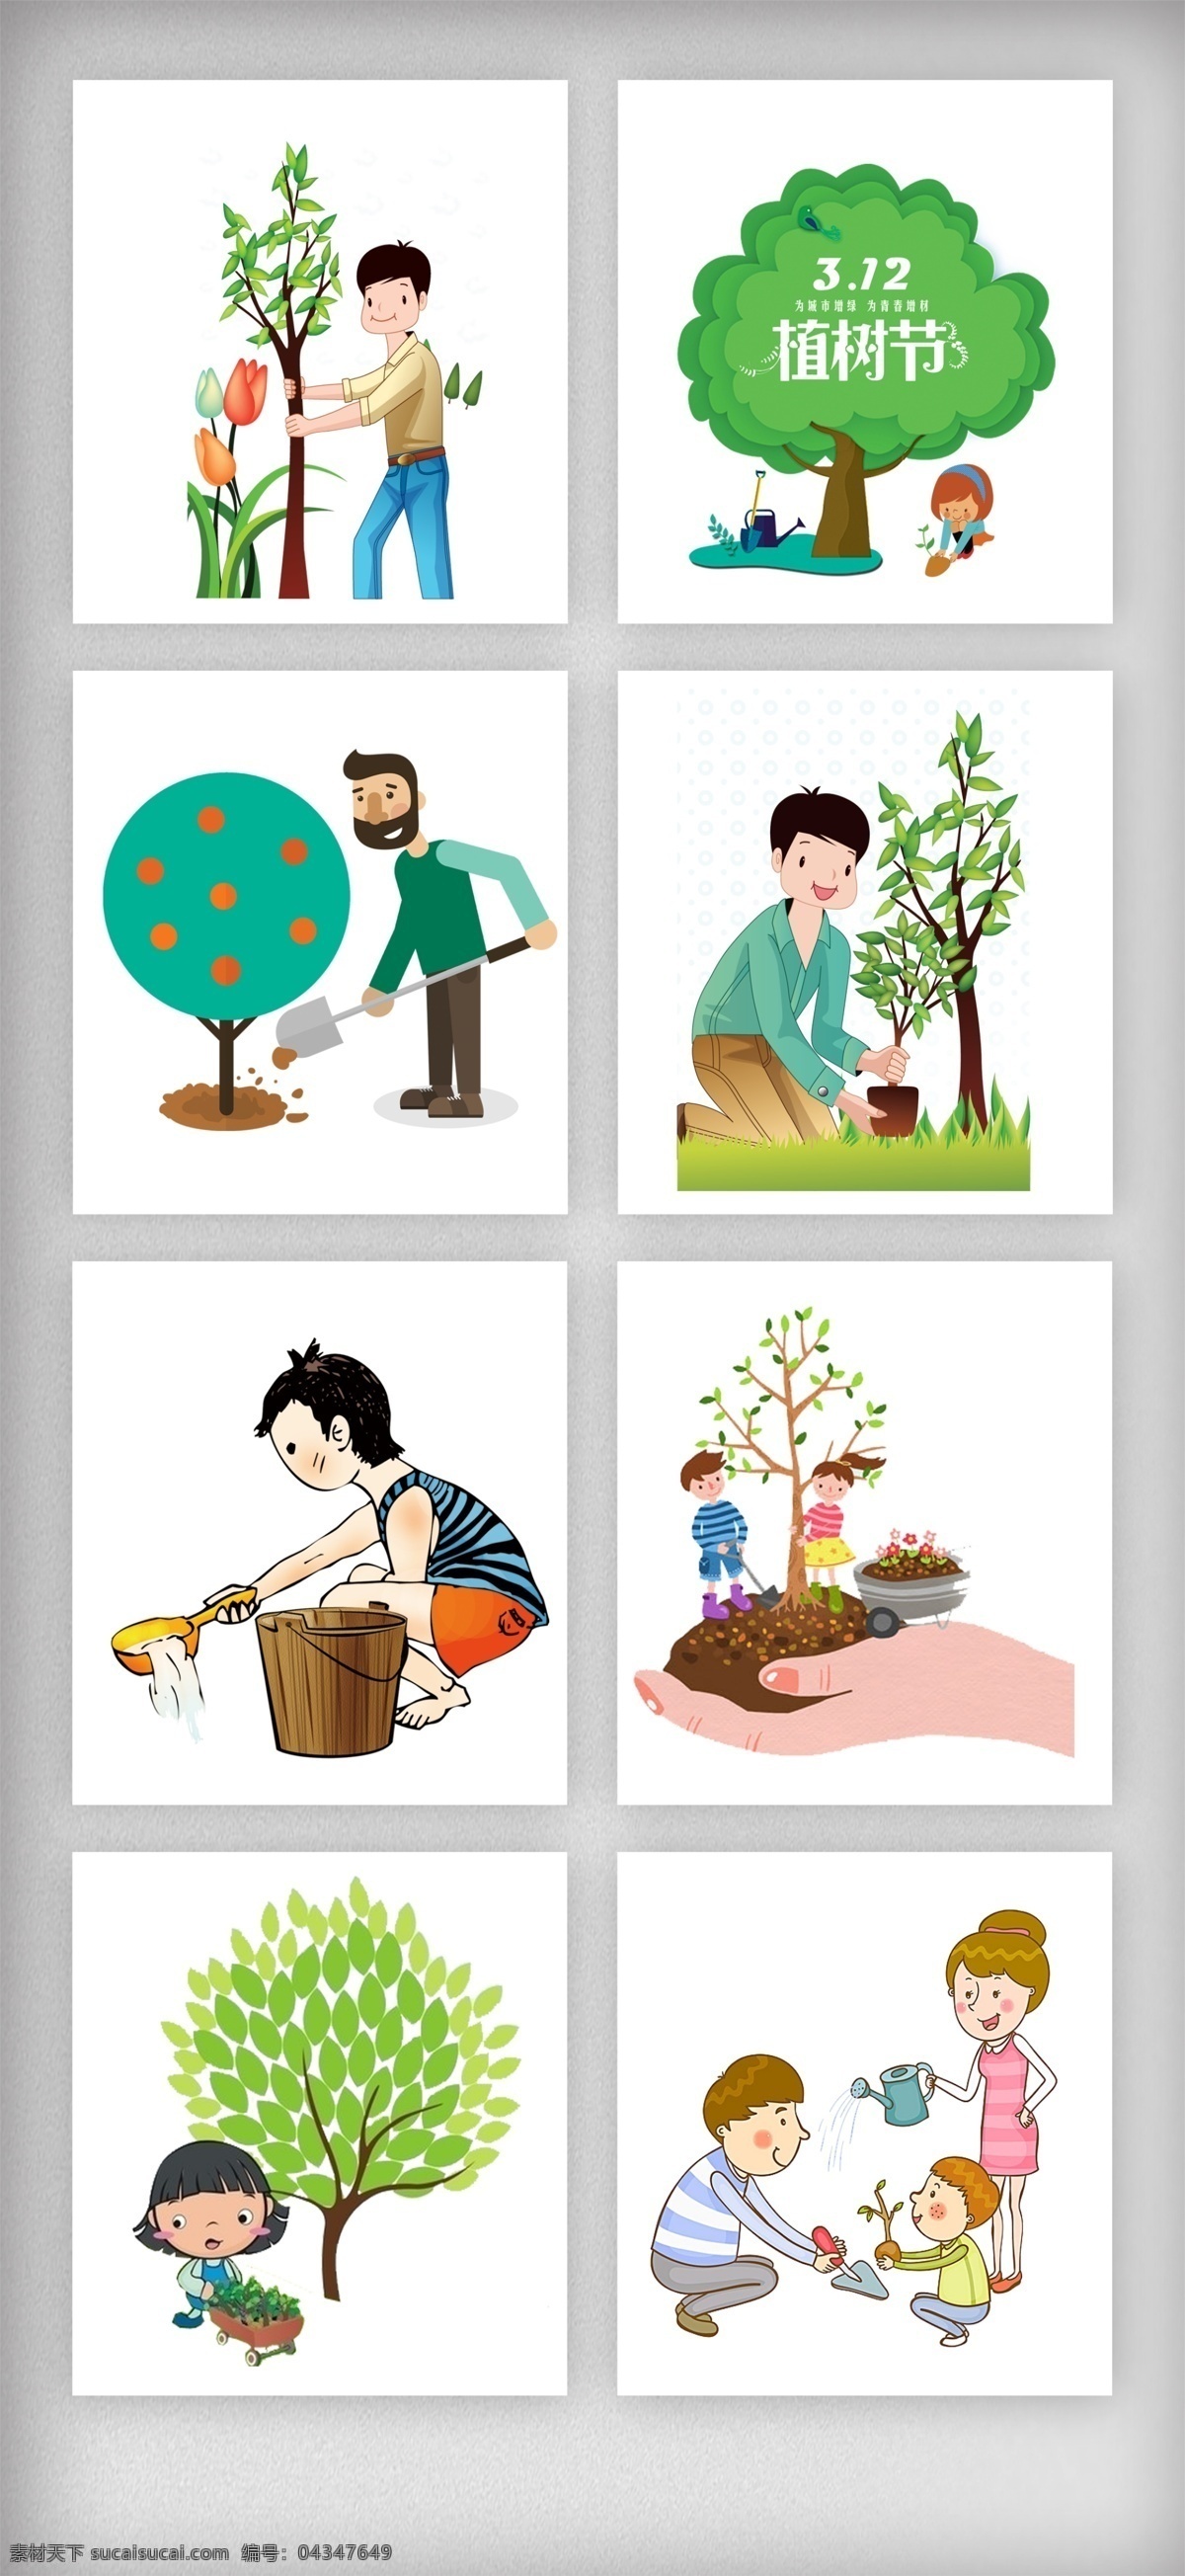 创意 精美 植树节 元素 环境保护 绿色 卡通素材 小树苗 环保建设 免 抠 种树 植树节素材 绿色植树 节素材 素材素材下载